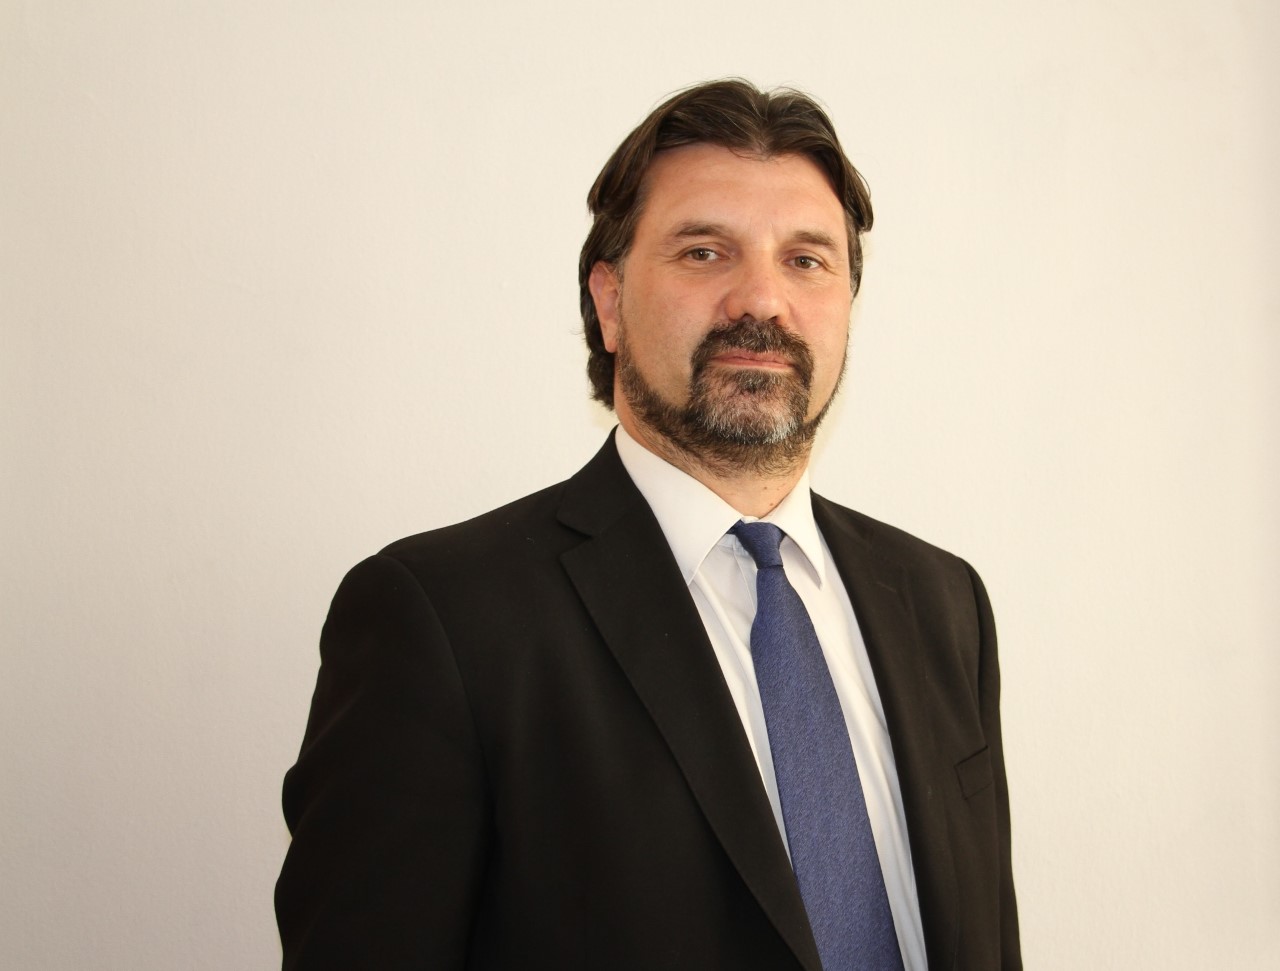 Oporto y el oportunismo – Oscar Carrasco, Subsecretario de Prevención del Delito – Opinión